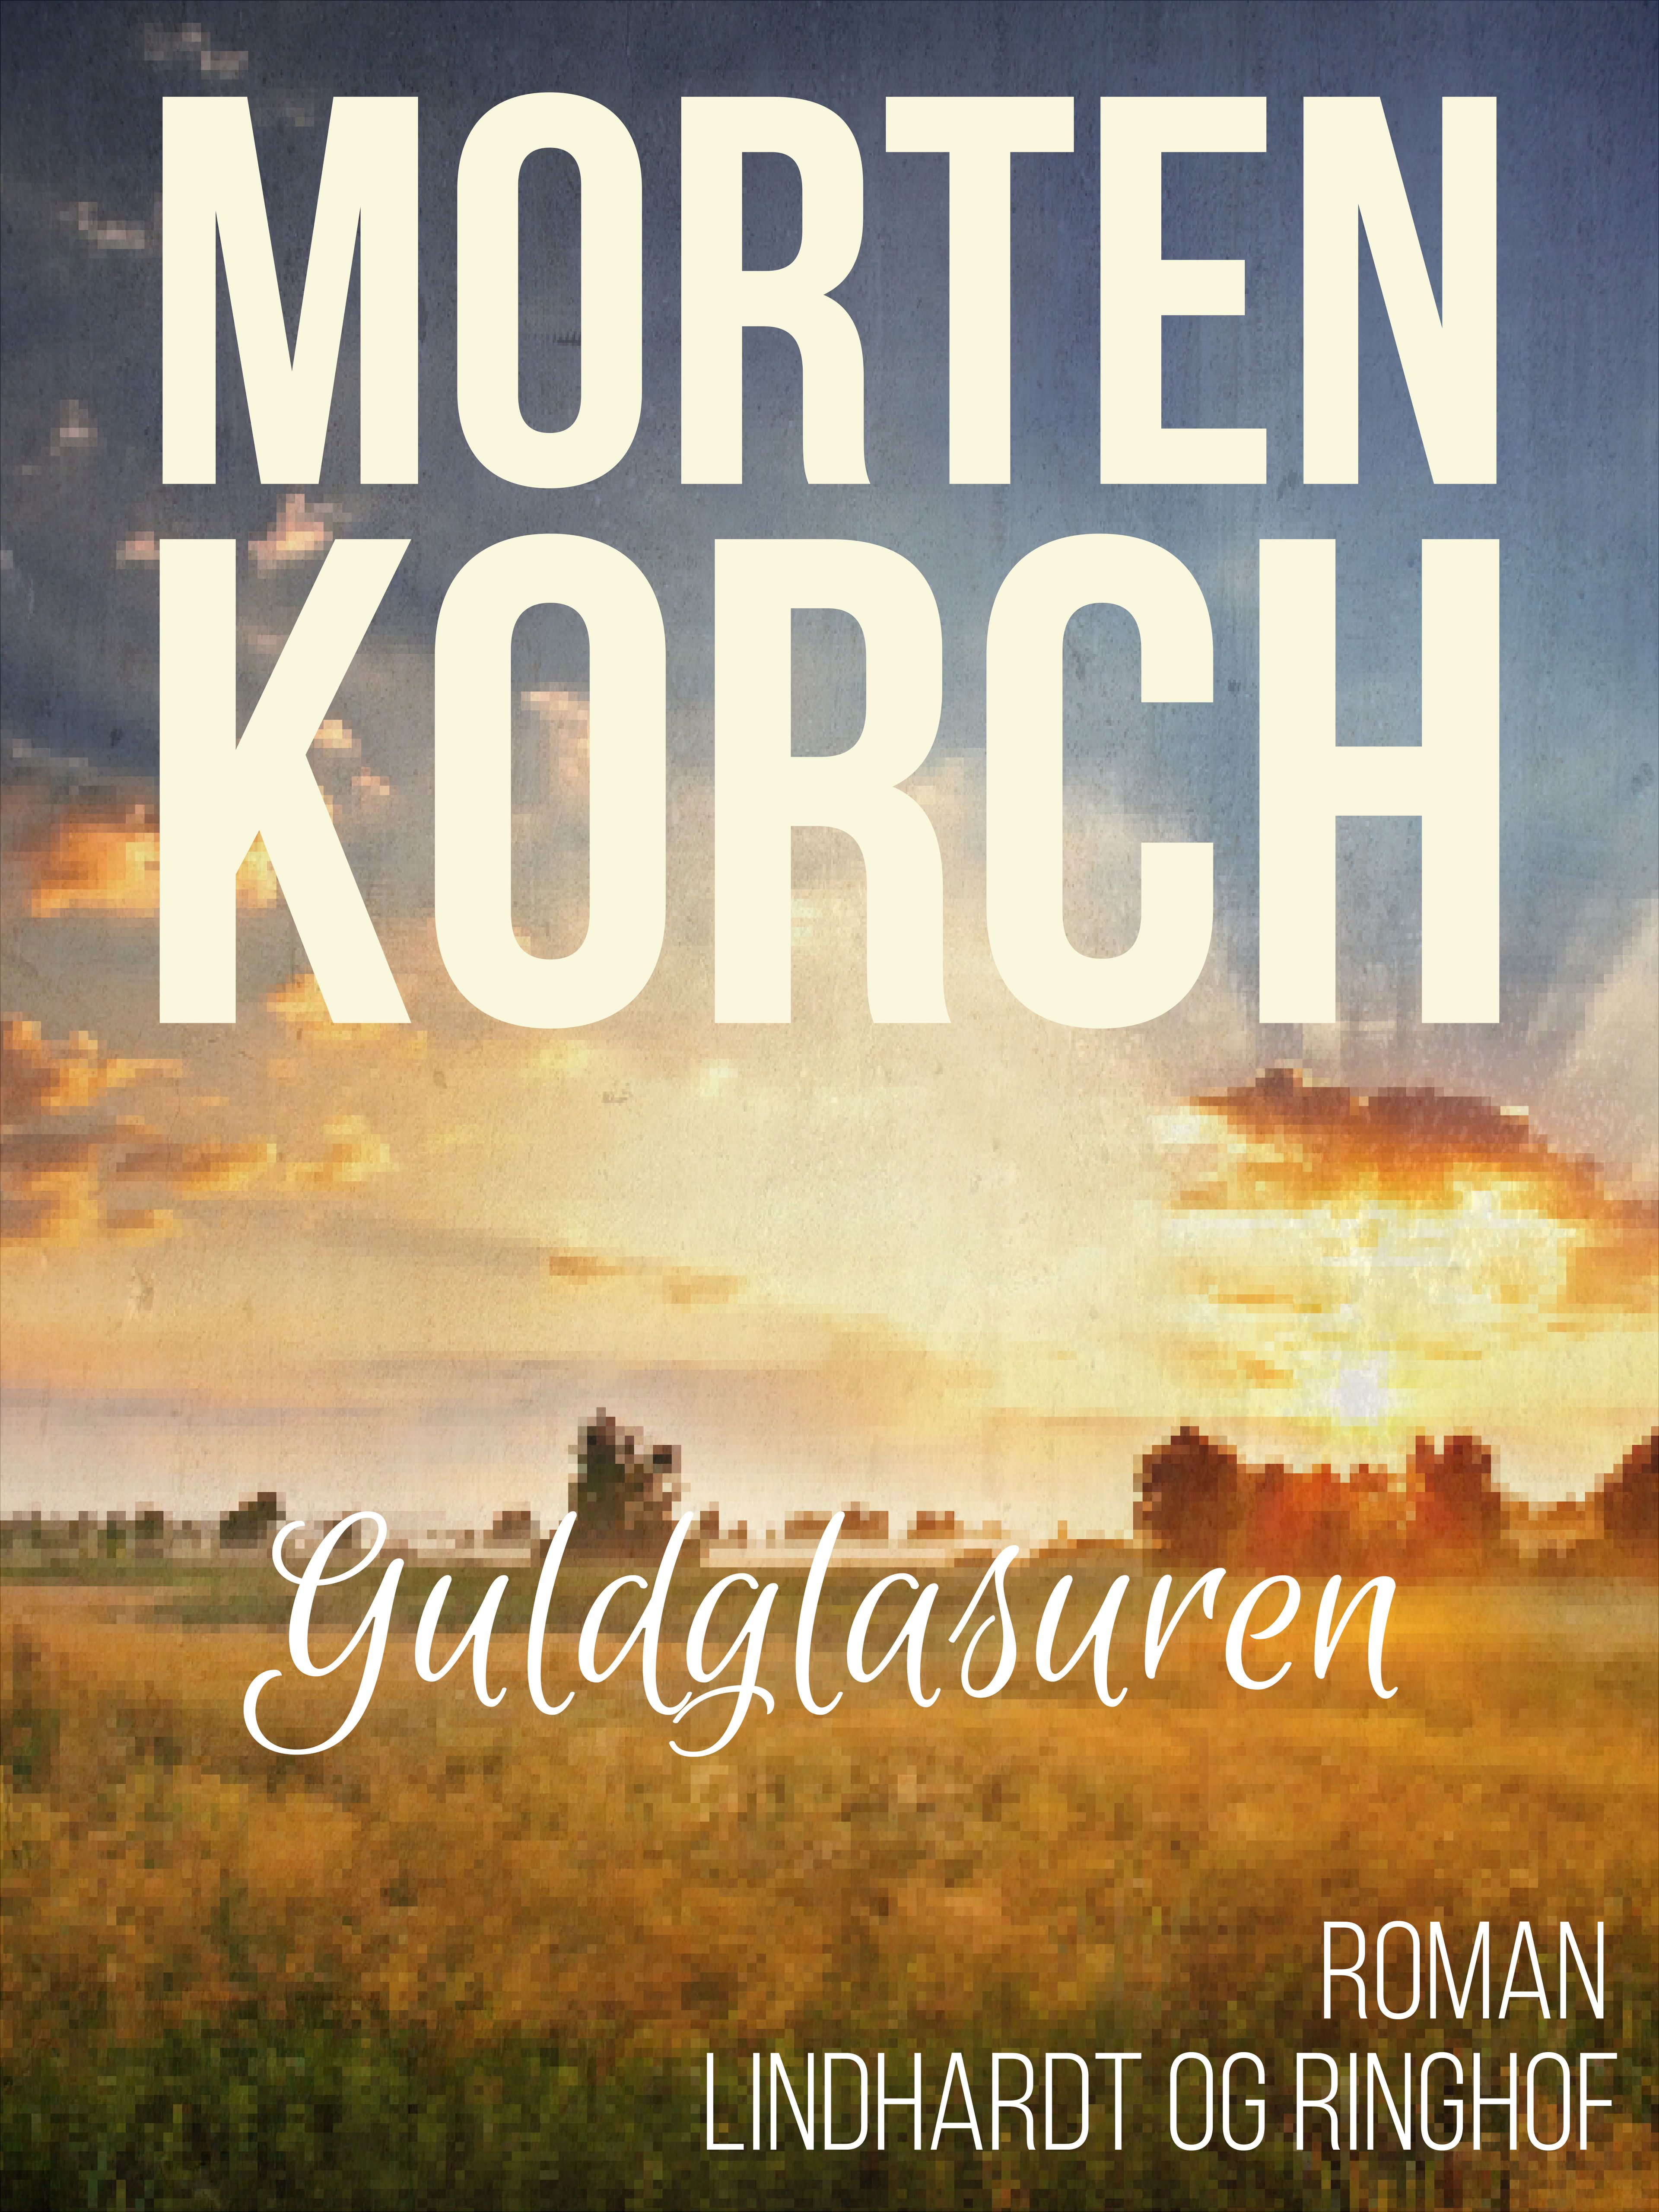 Guldglasuren, ljudbok av Morten Korch